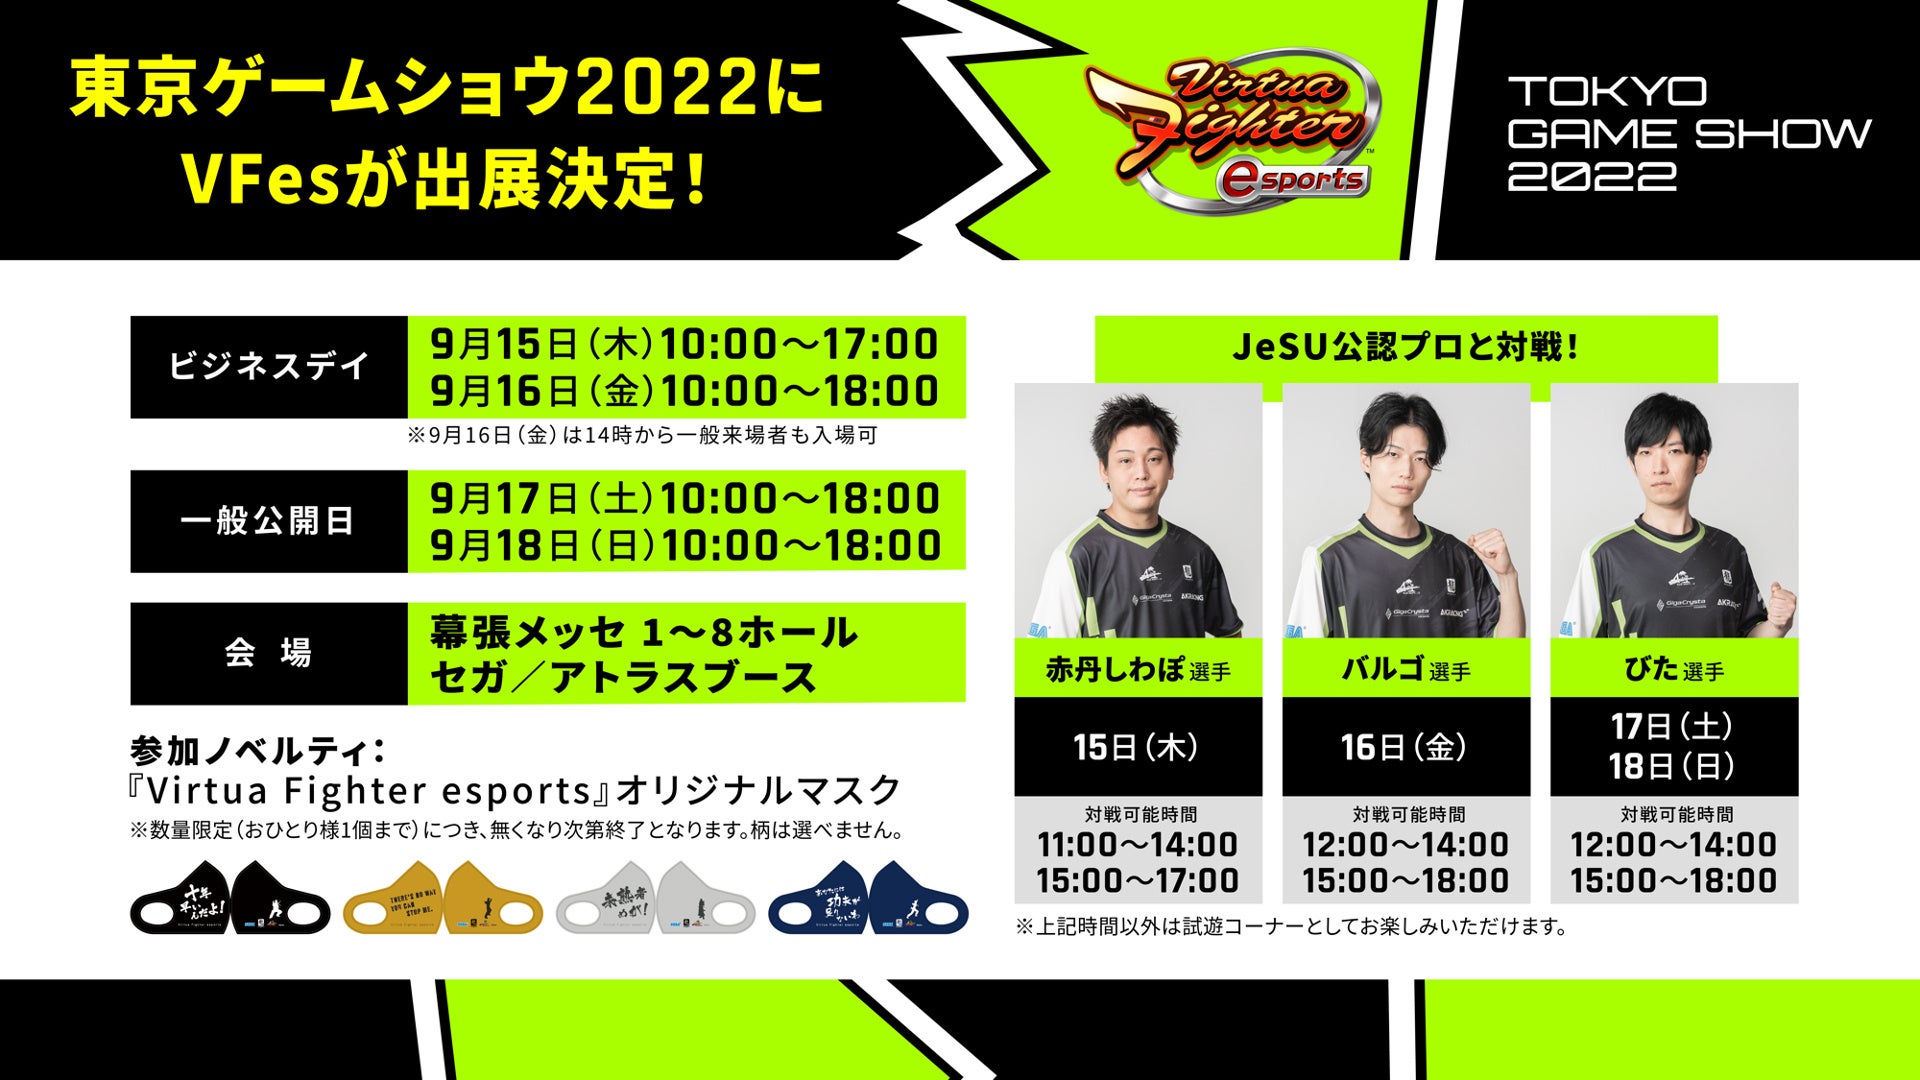 東京ゲームショウ2022『Virtua Fighter esports』の出展情報を公開！プロ選手の赤丹しわぽ選手、バルゴ選手、びた選手が登場　プロ選手との対戦に挑戦しよう